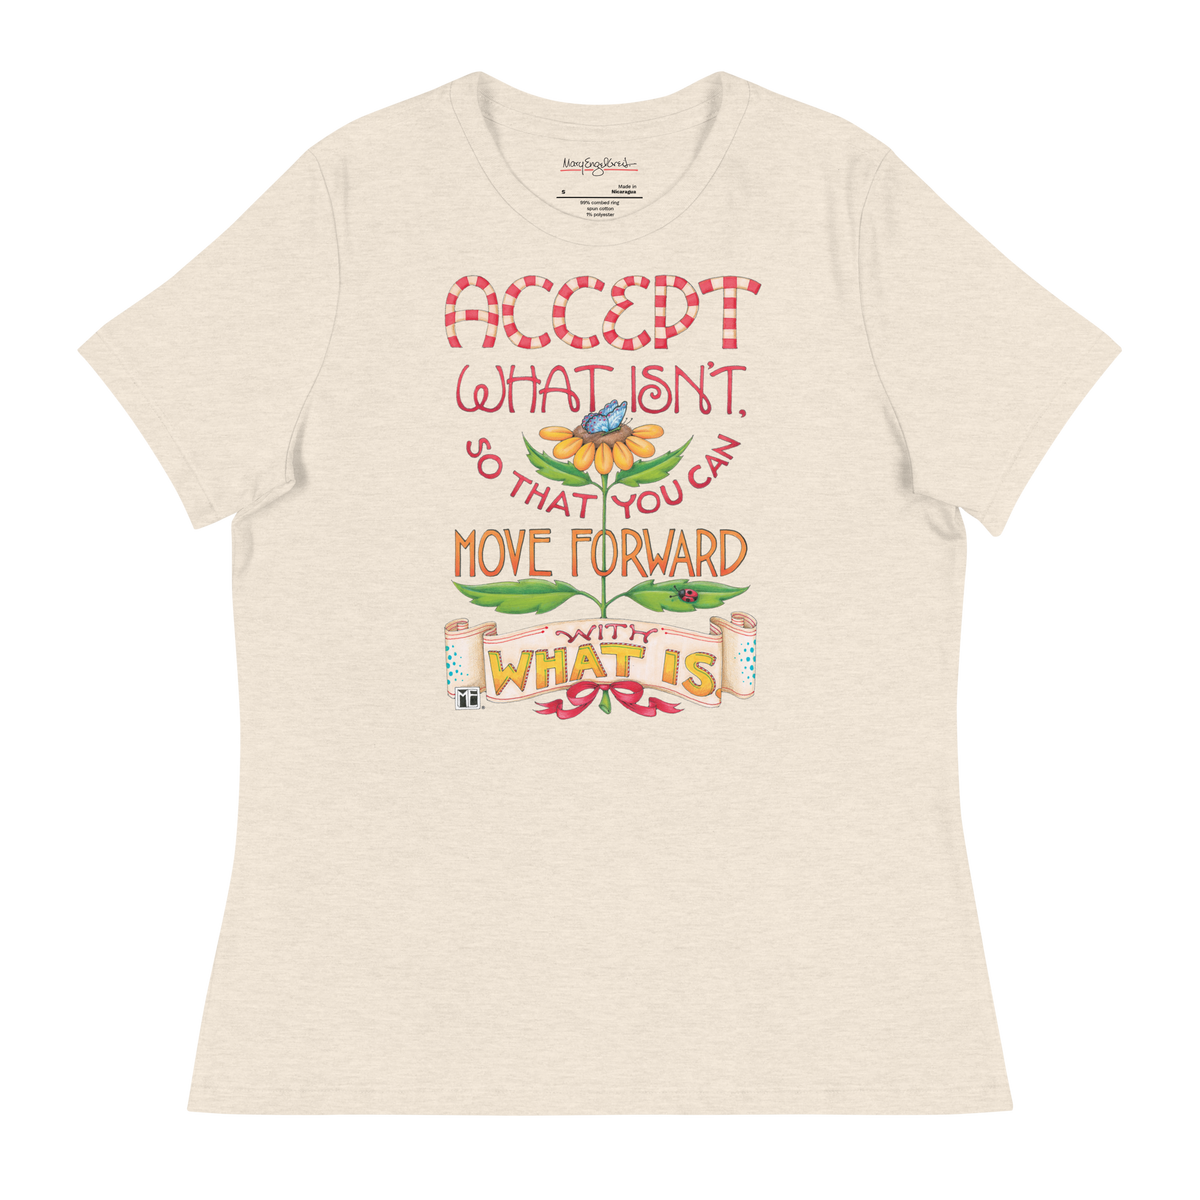 Accept Women's T-Shirt